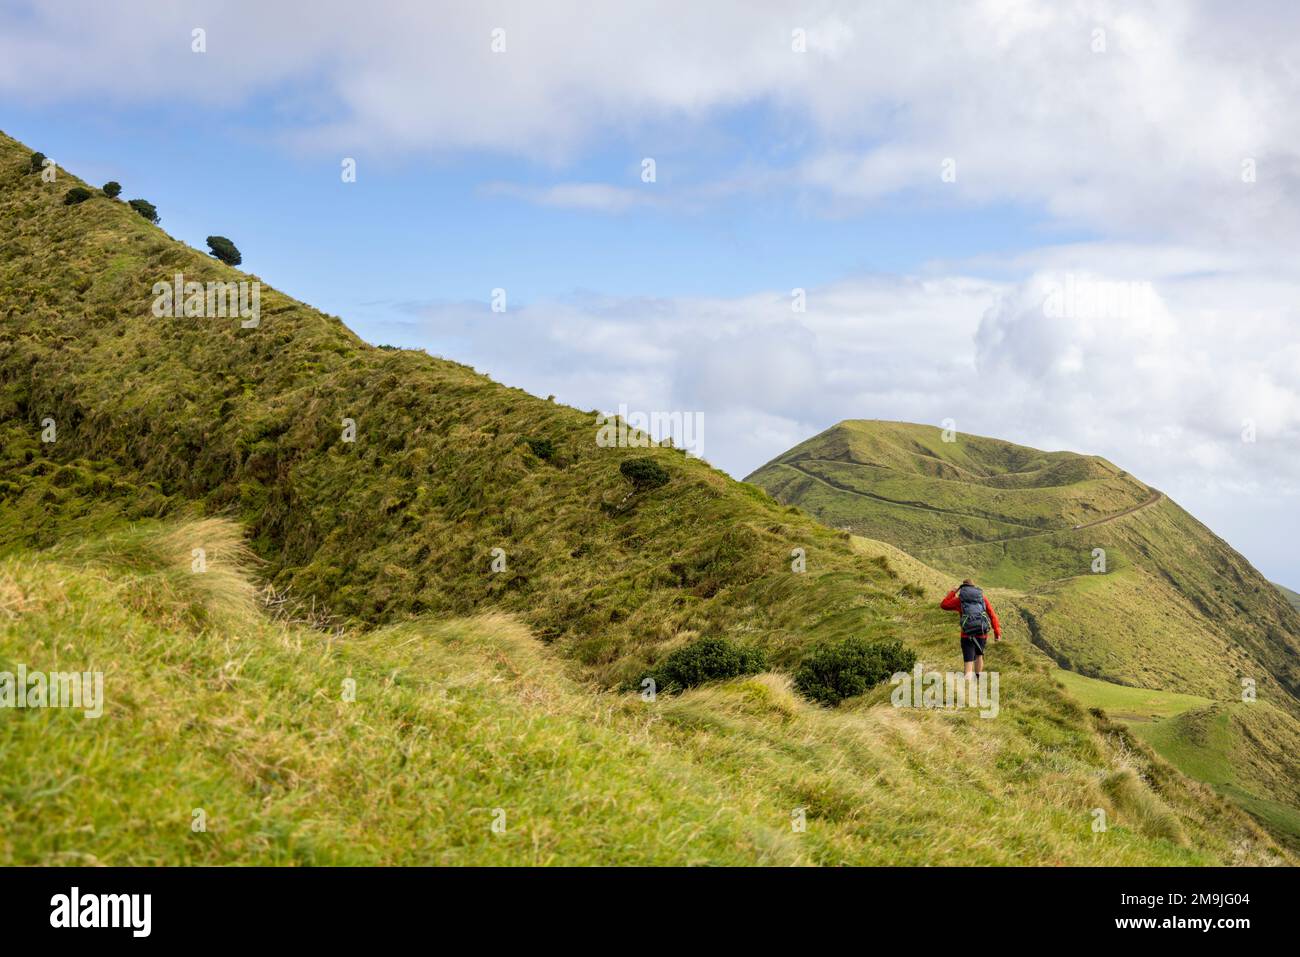 Personne qui monte un vieux bord de cratère sur l'île de São Jorge dans les Açores Banque D'Images